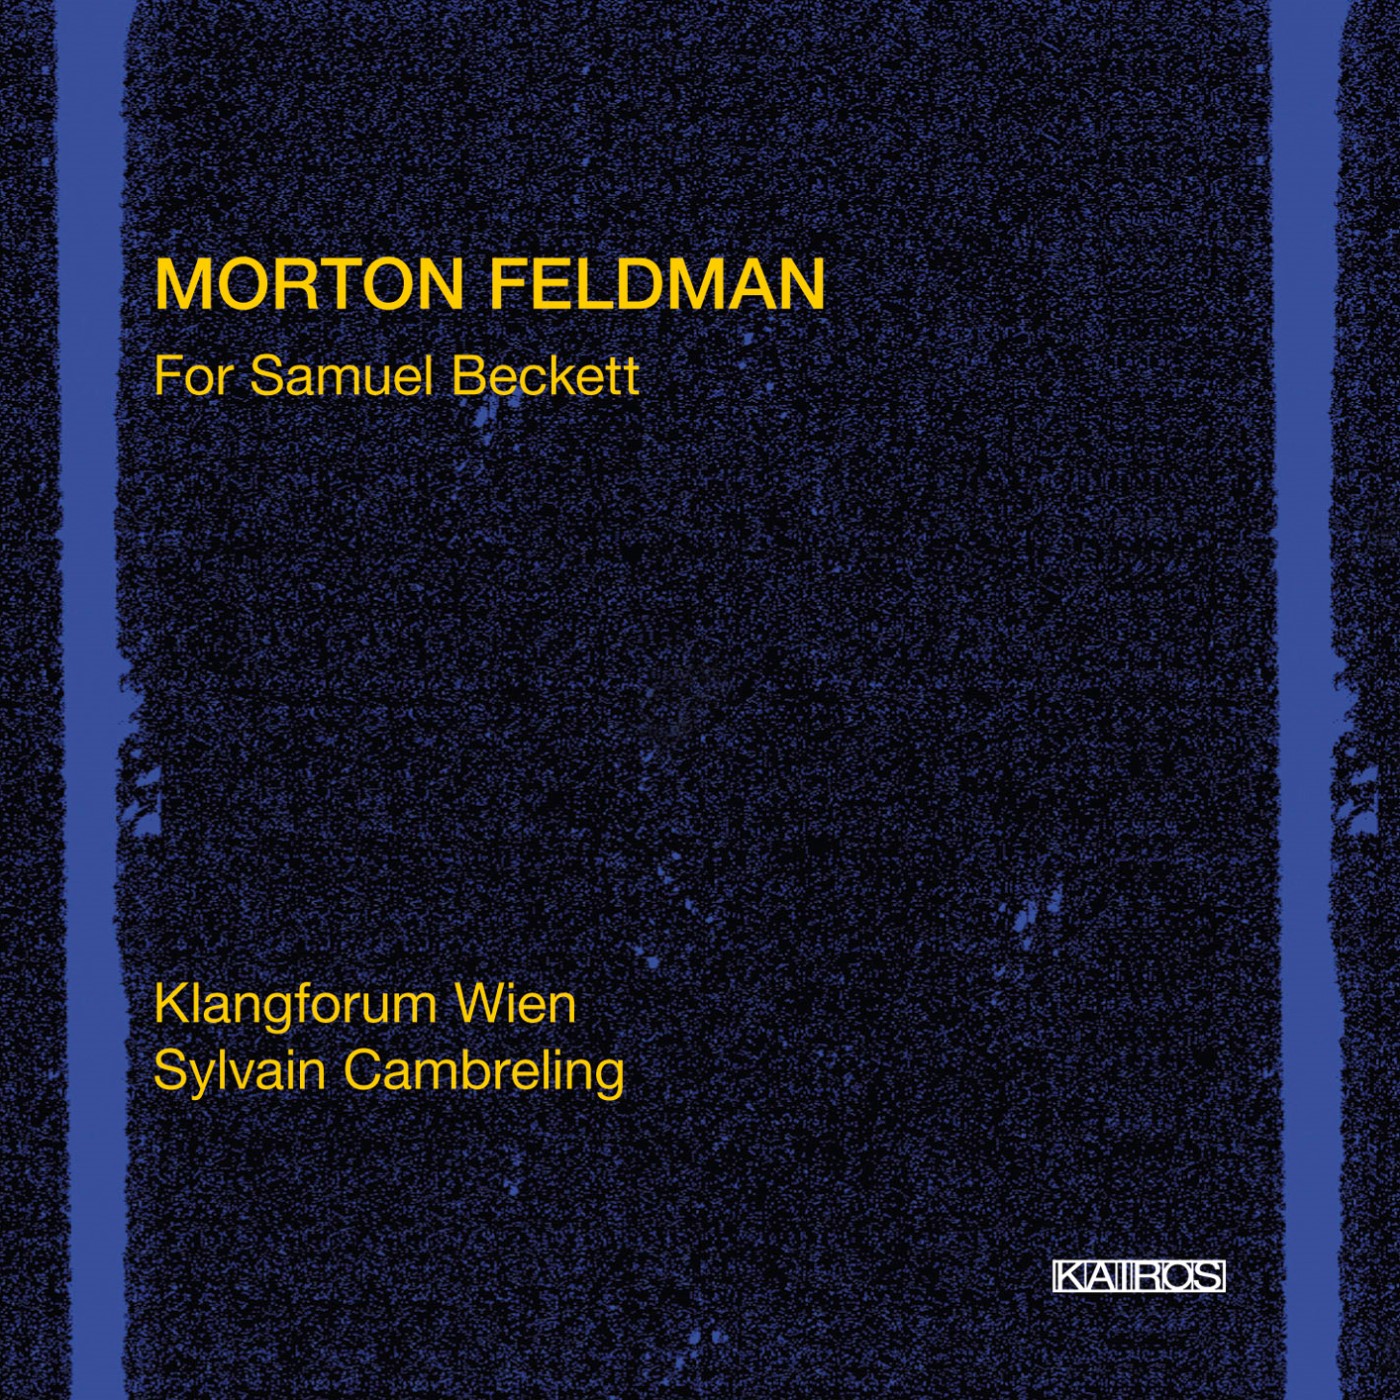 MORTON FELDMAN For Samuel Beckett  KAIROS